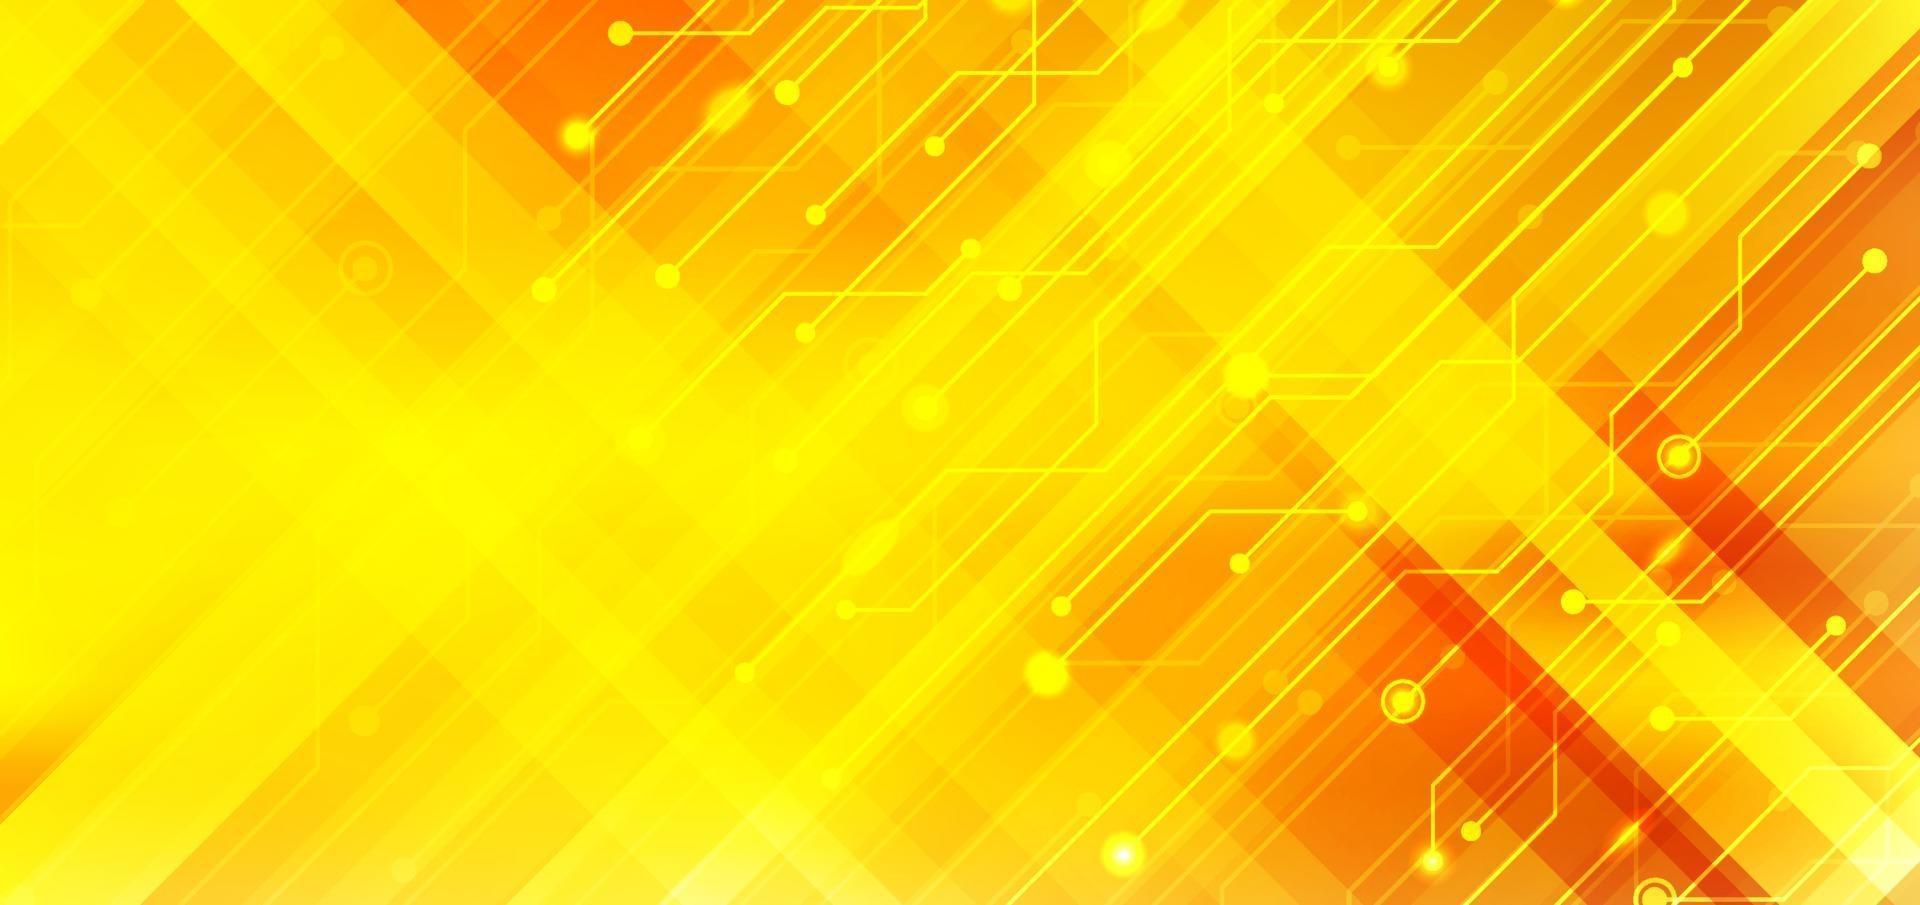 abstrakte Geschäftstechnologie Strukturschaltung Computer Diagonalstreifen gelb und orange Farbverlauf Hintergrund mit Lichteffekt. vektor